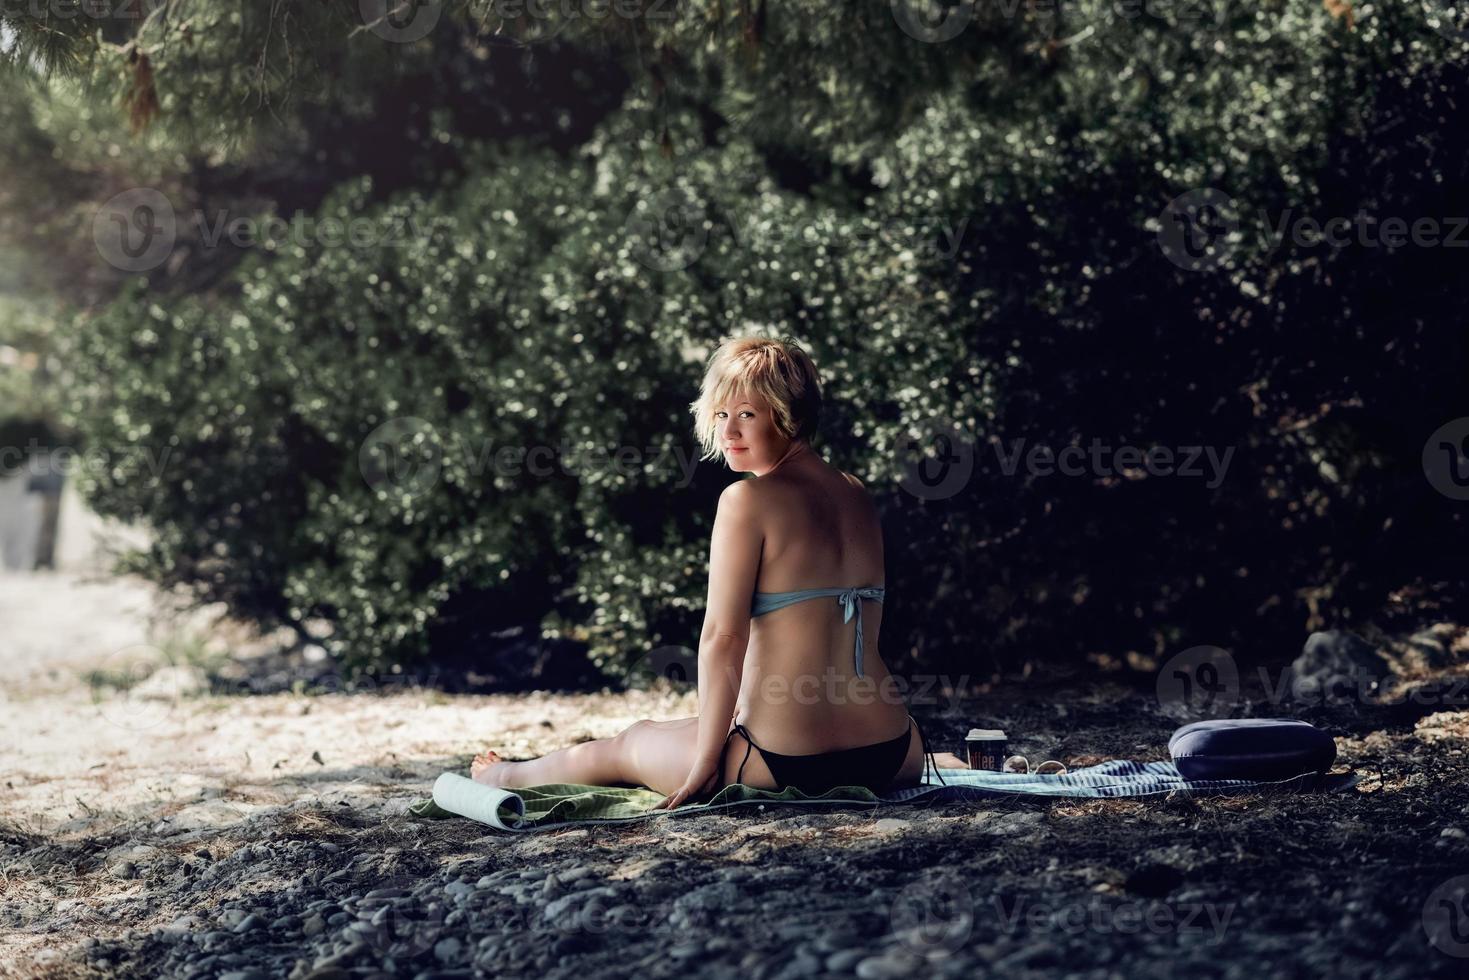 vrouw in bikini alleen genieten op het strand. blonde vrouw genieten van haar koffie in de schaduw van dennenboom op het wilde strand. foto